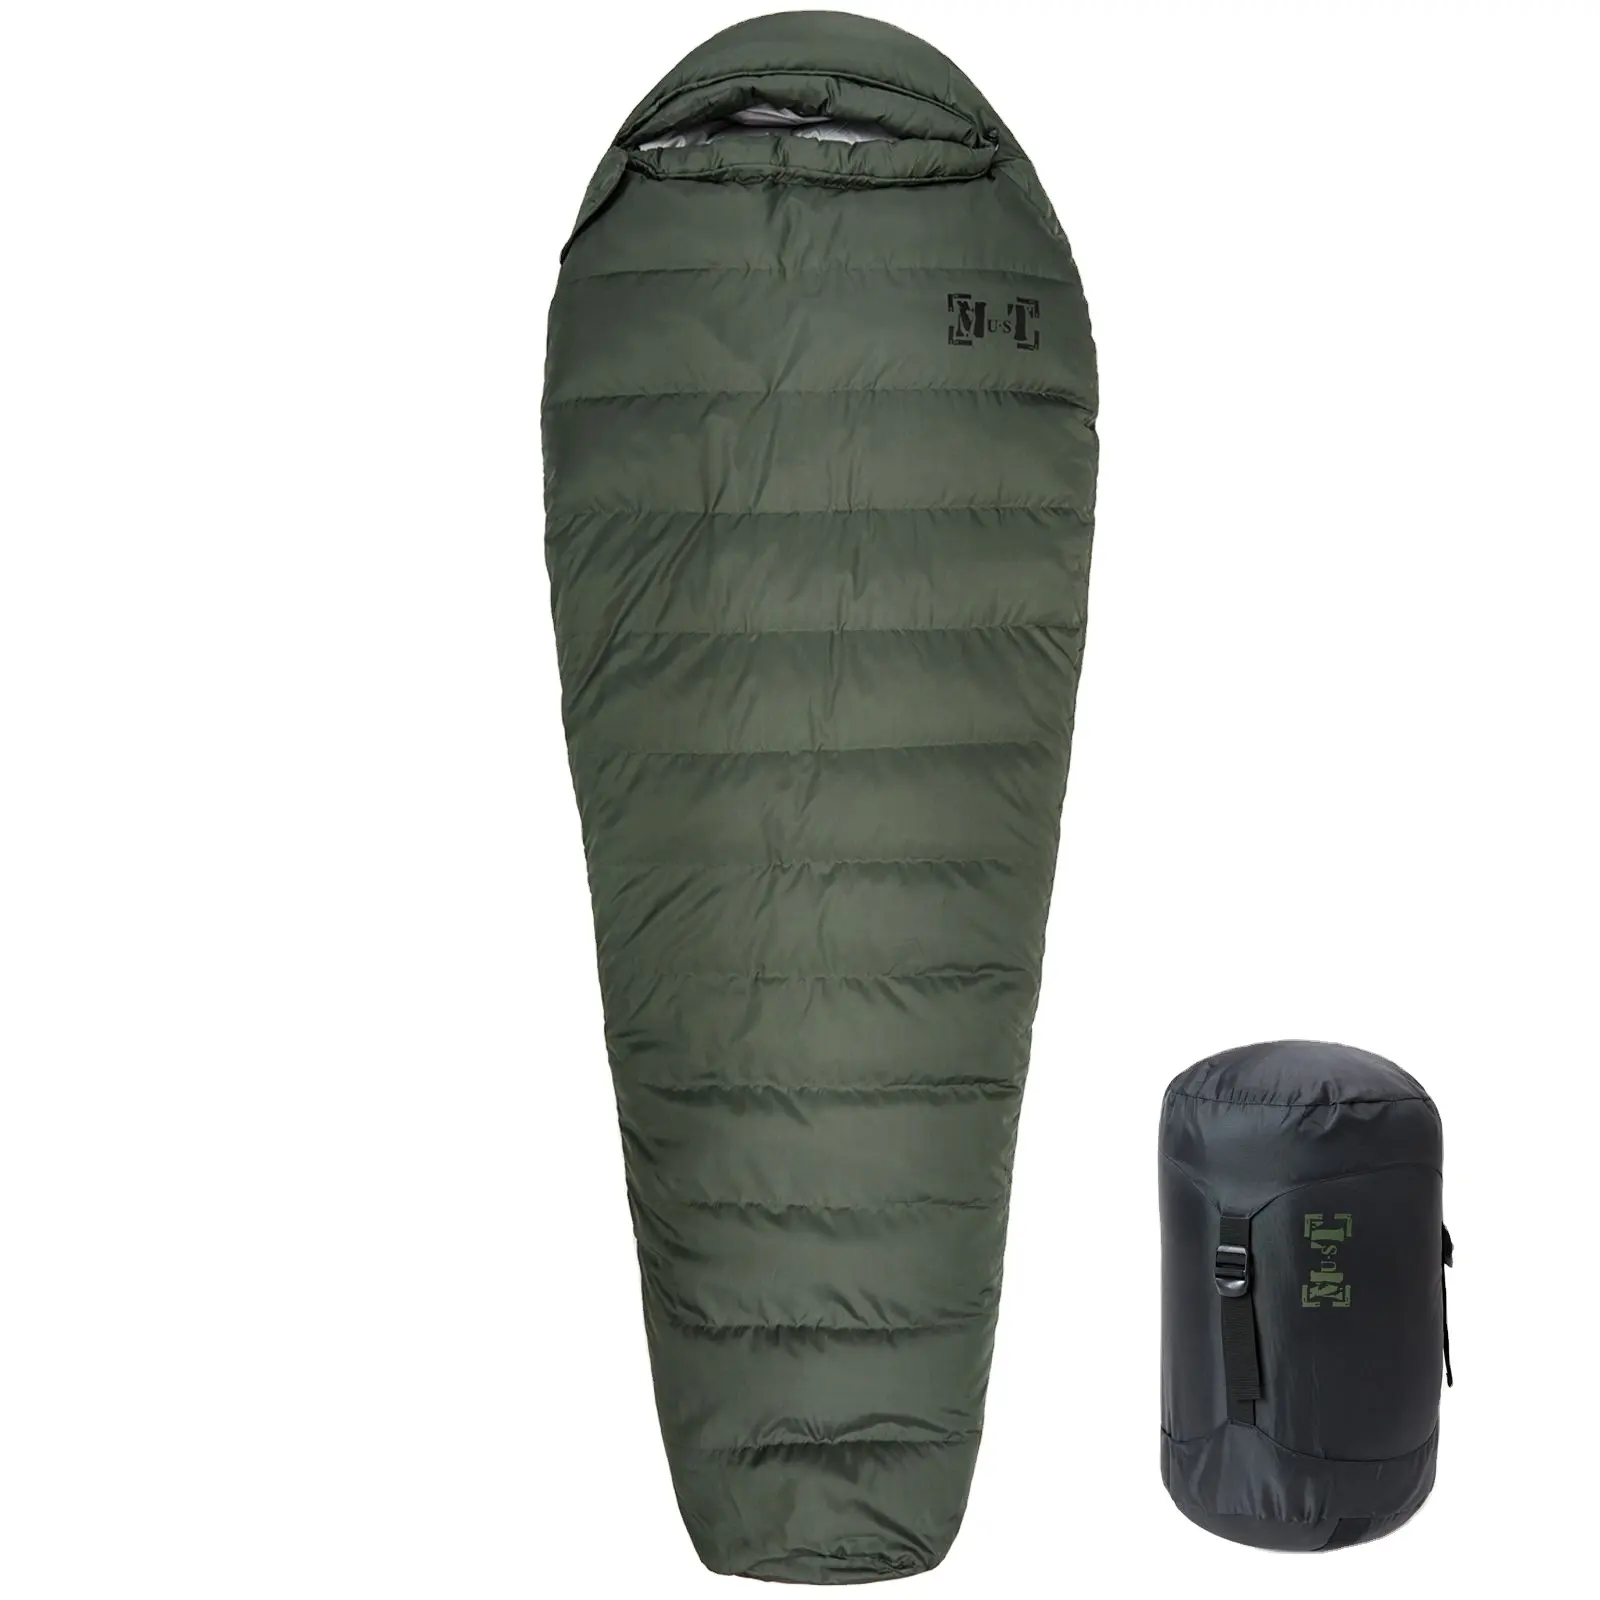 AKmax Ranger aşağı mumya anti-aşırı soğuk uyku tulumu taşınabilir kamp yürüyüş uyku tulumu zeytin yeşil